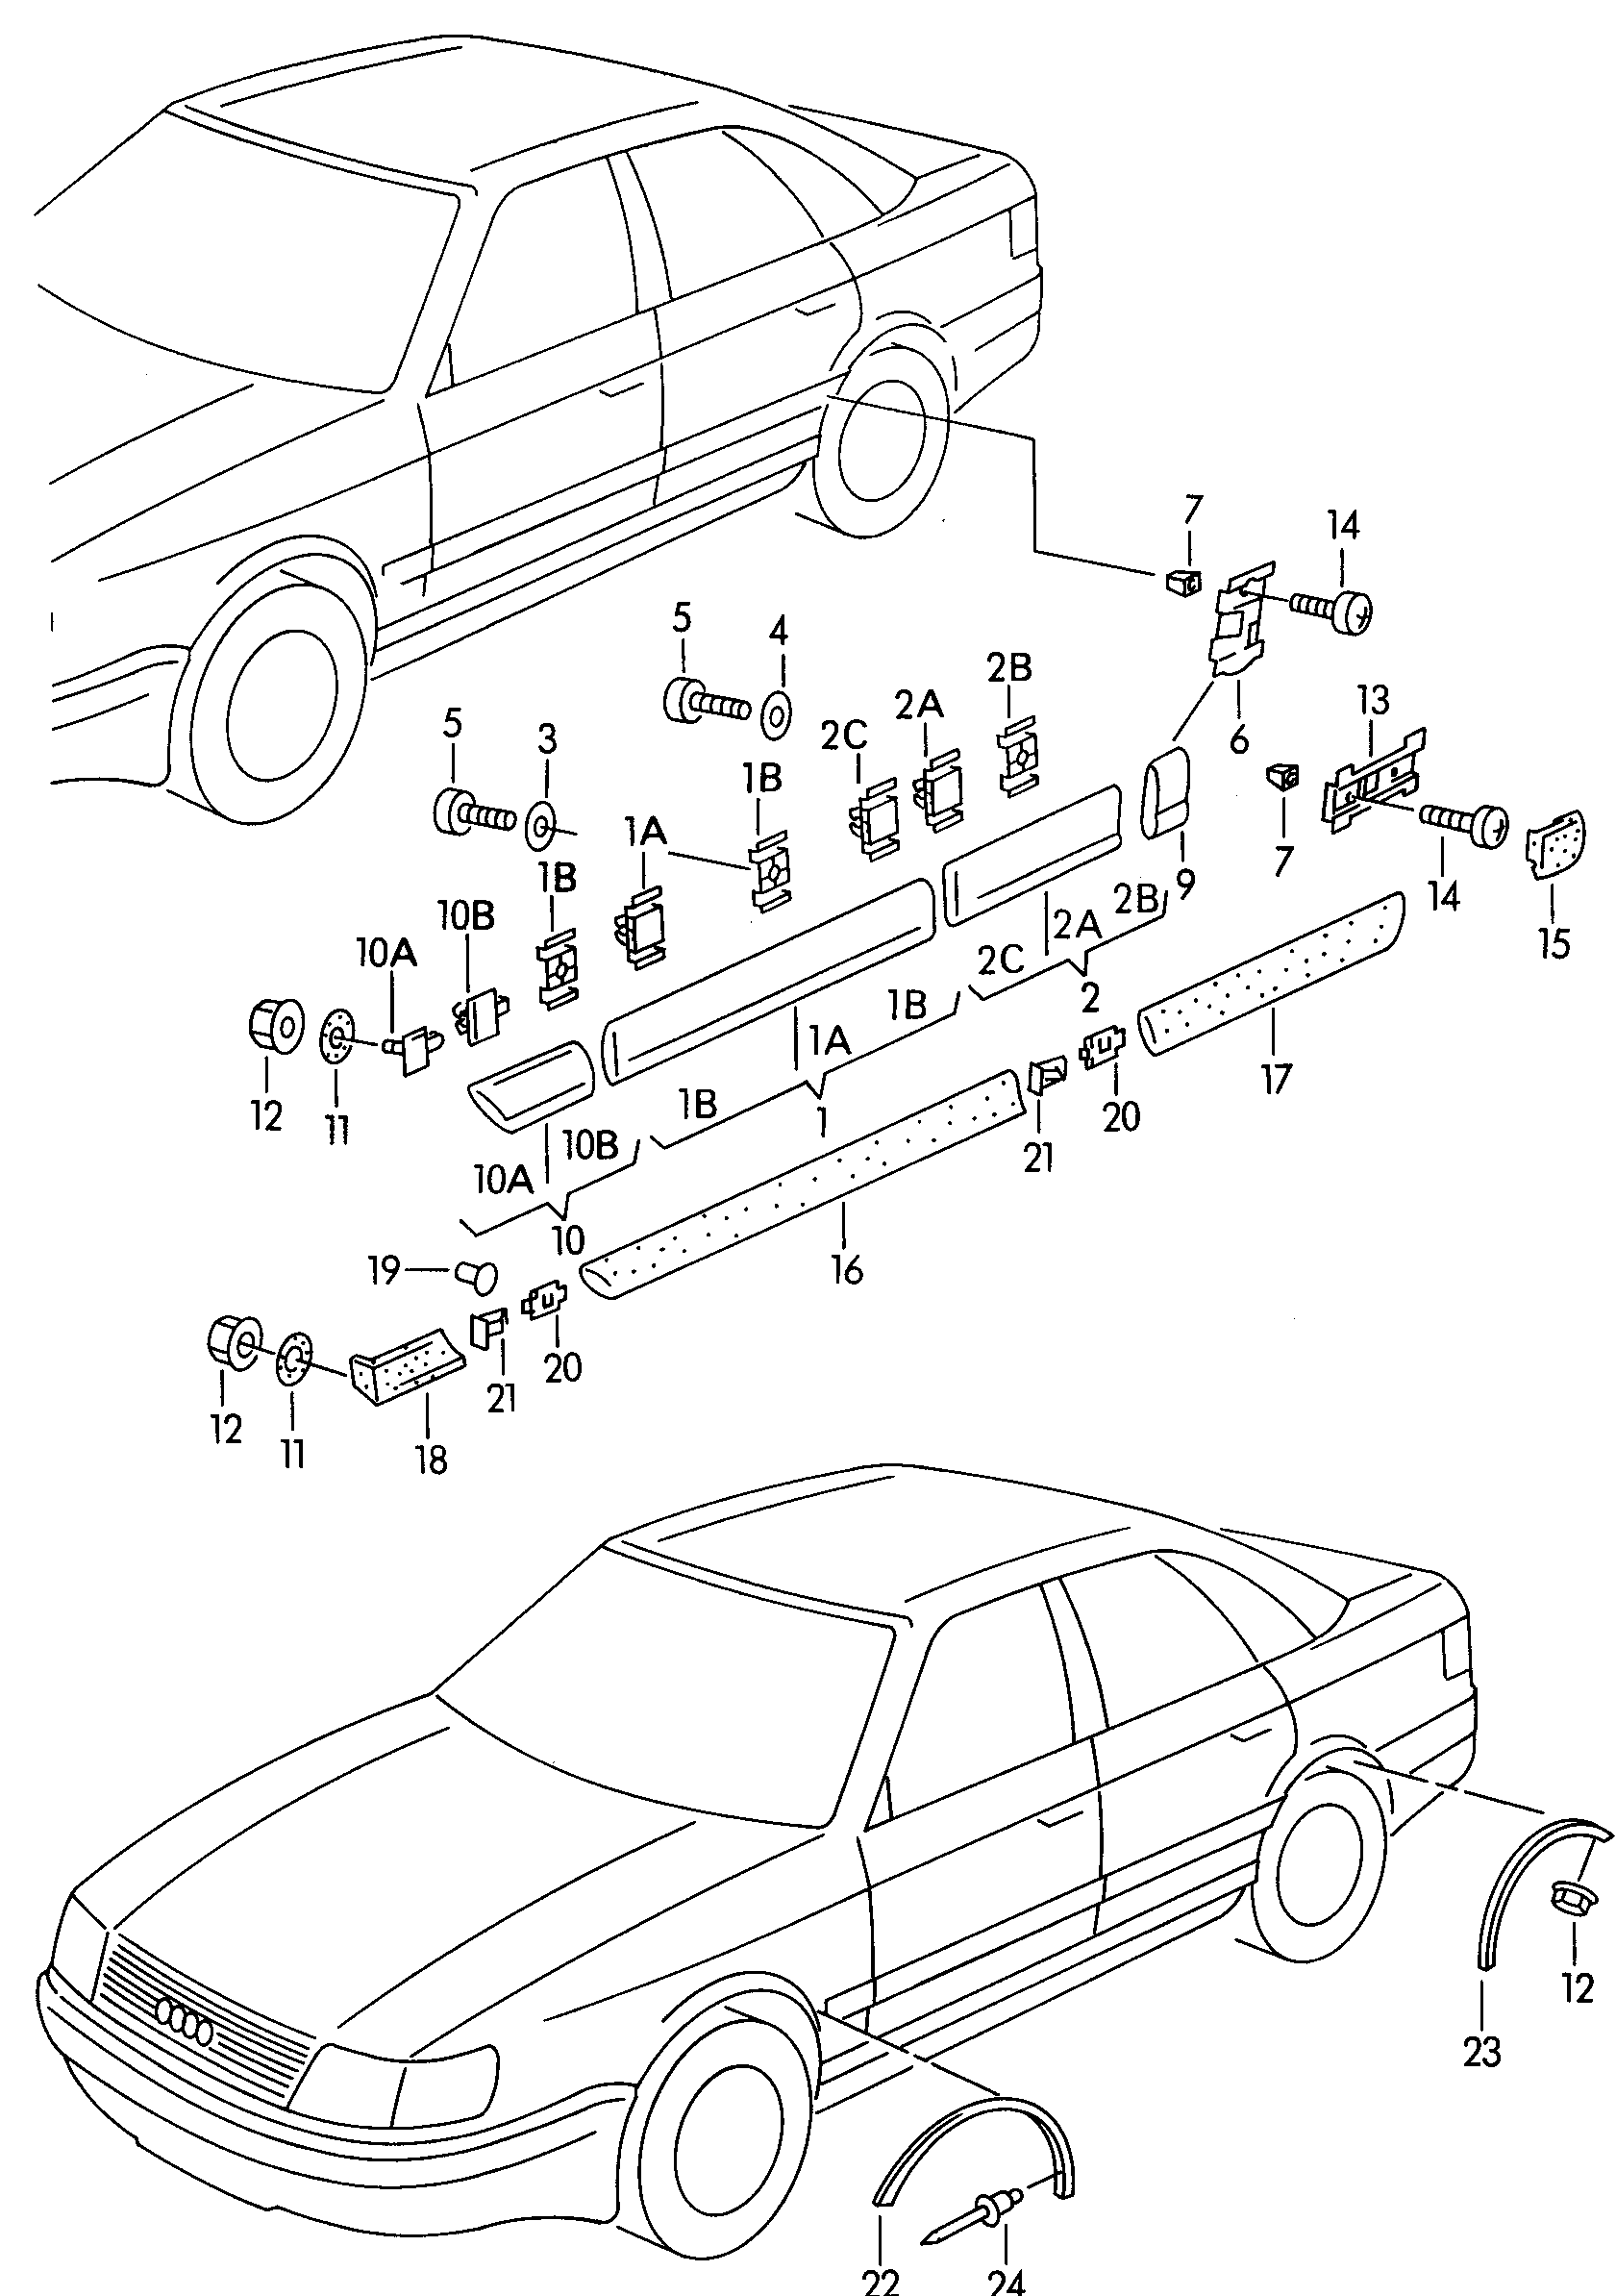 modanature e coperture
per parafanghi, porte
e f... - Audi A6/Avant(A6)  